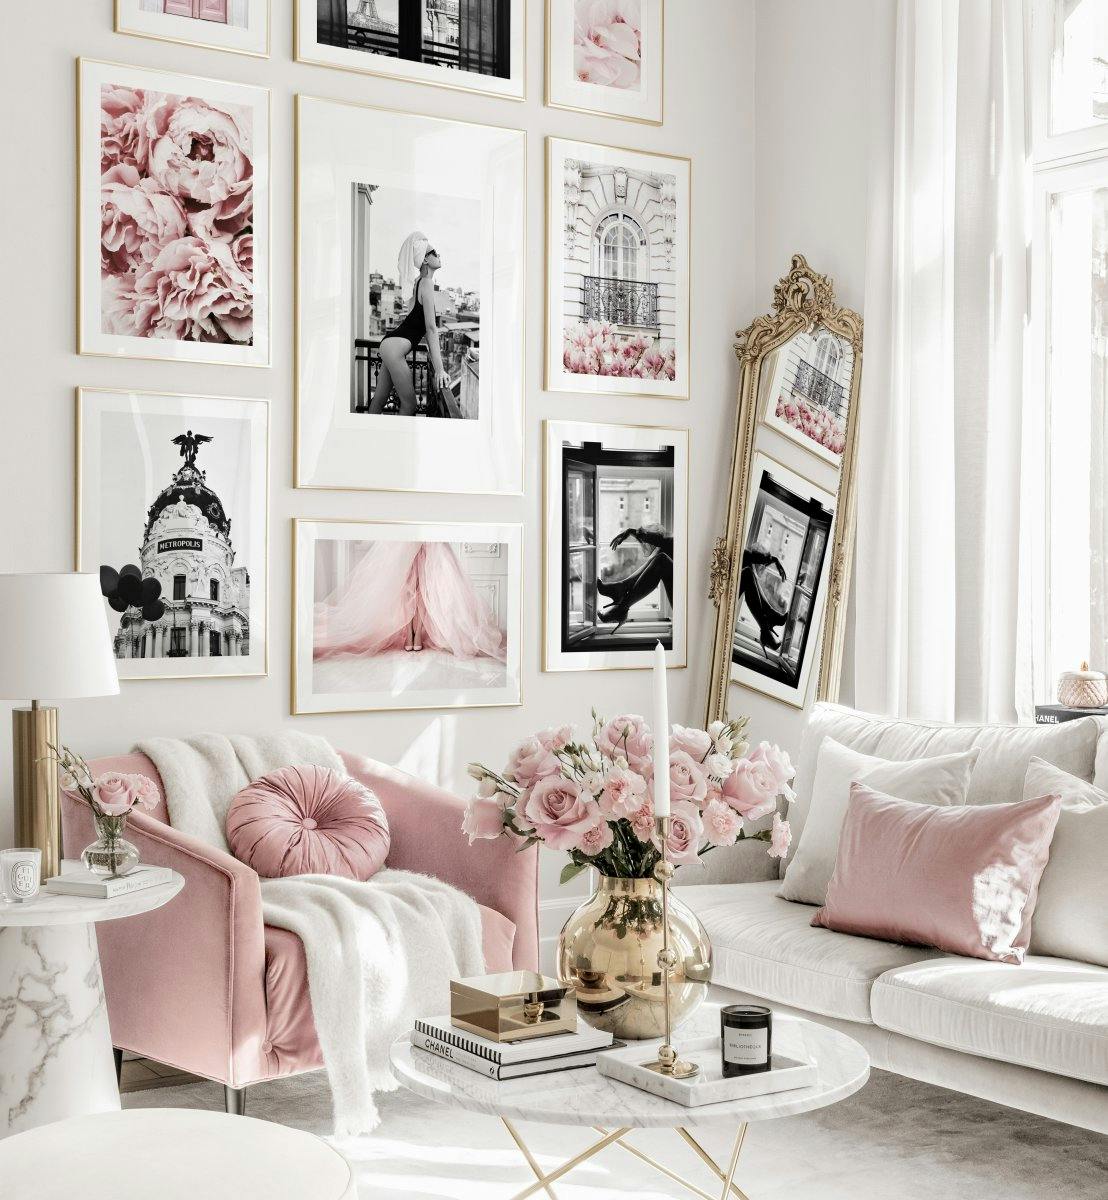 Modna rozowa galeria obrazow modne plakaty kwiatowe plakaty zlote ramki